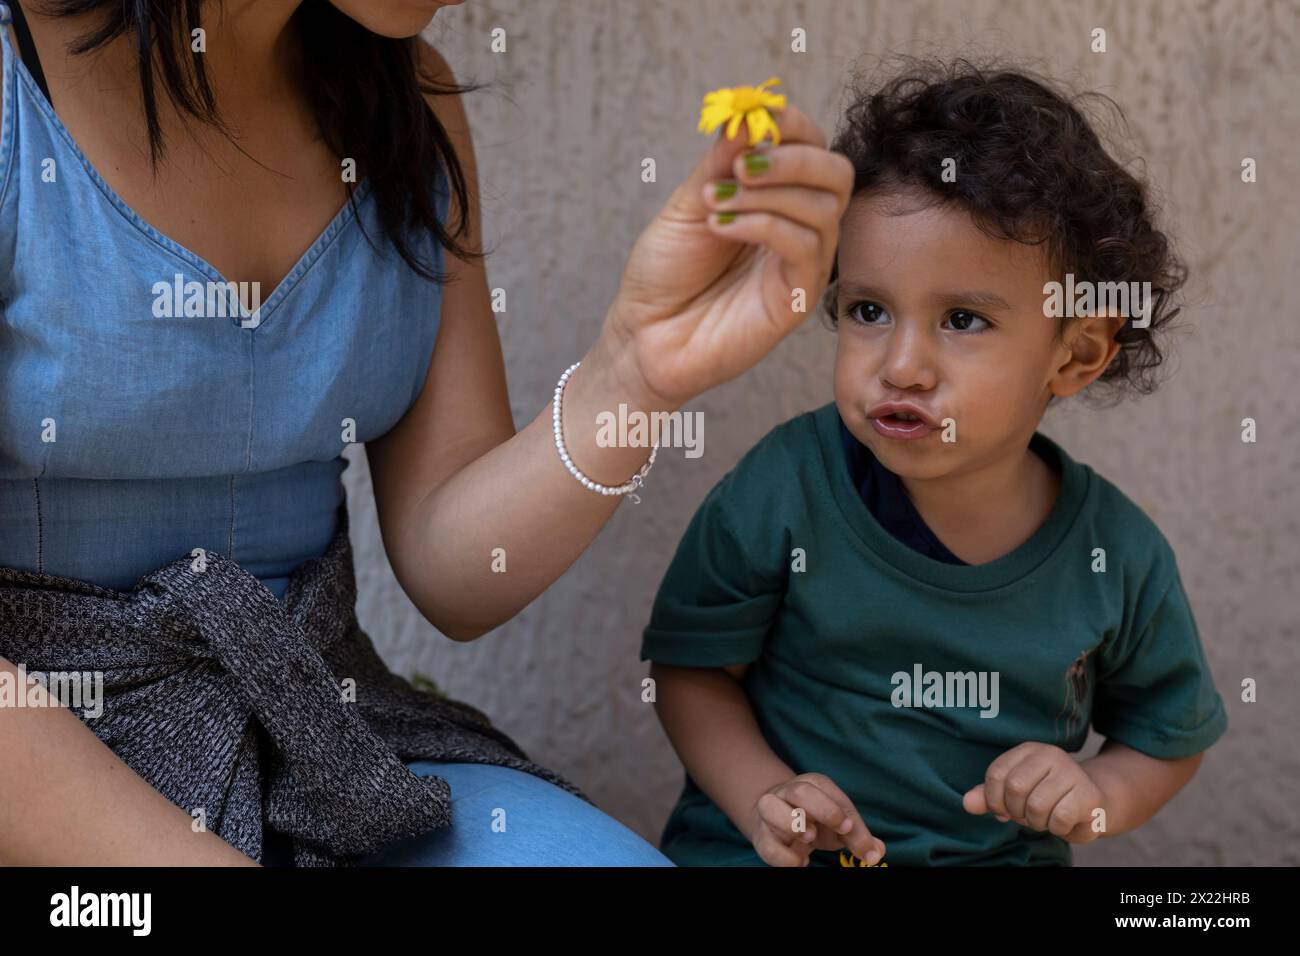 Lateinamerikanische Mutter und ihr Sohn spielen mit einer gelben Blume. Mutterschaft und Muttertagskonzept. Stockfoto